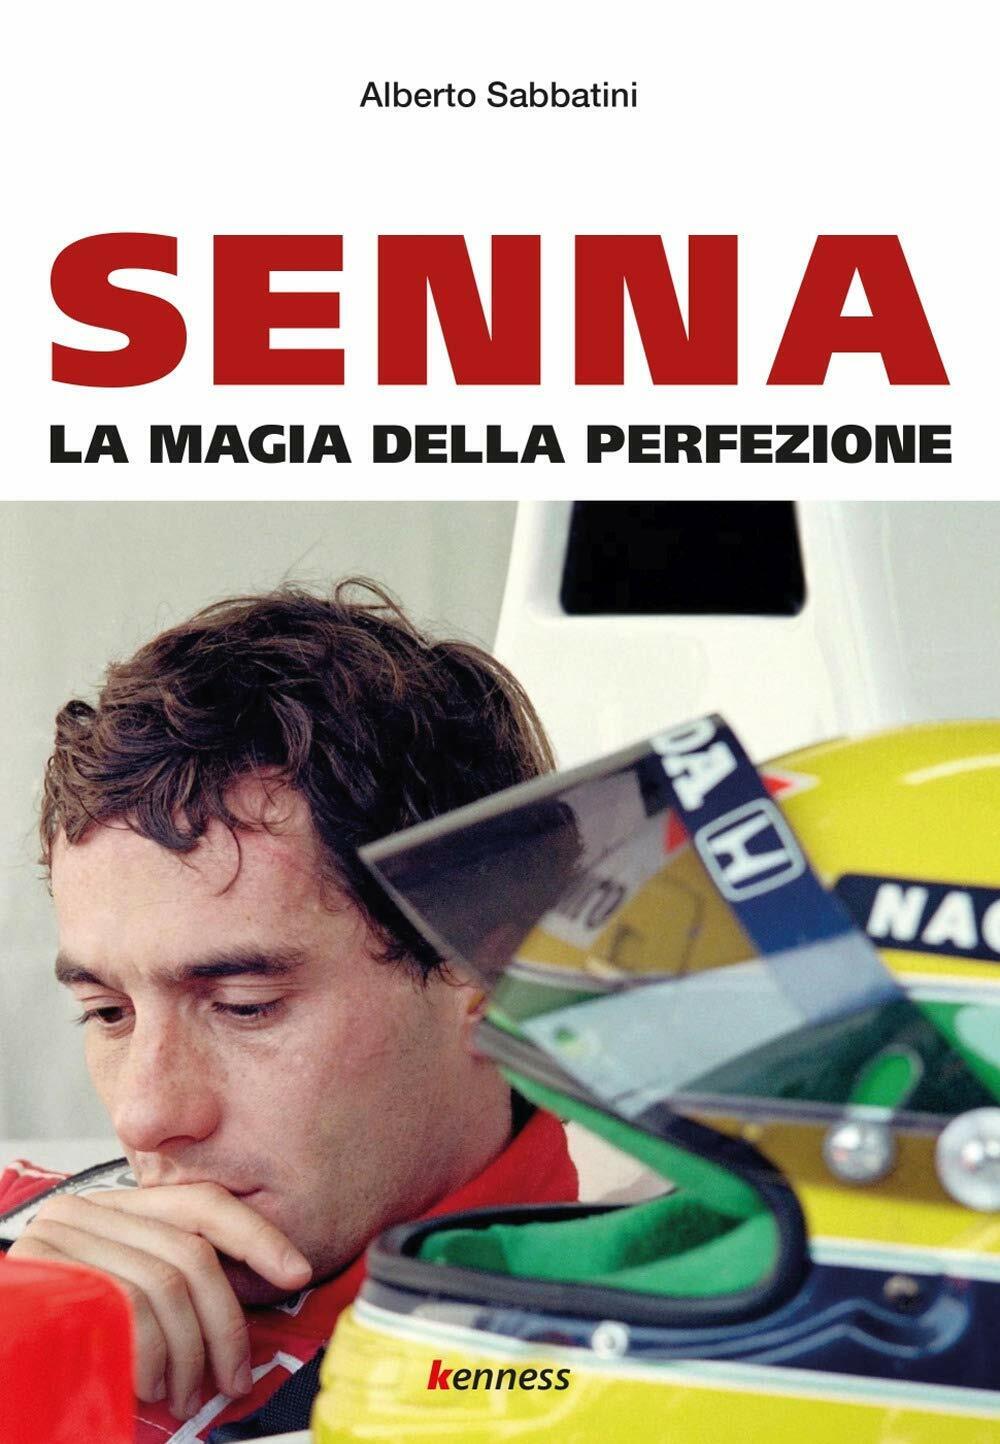 Senna. La magia della perfezione - Alberto Sabbatini - Kenness, 2020